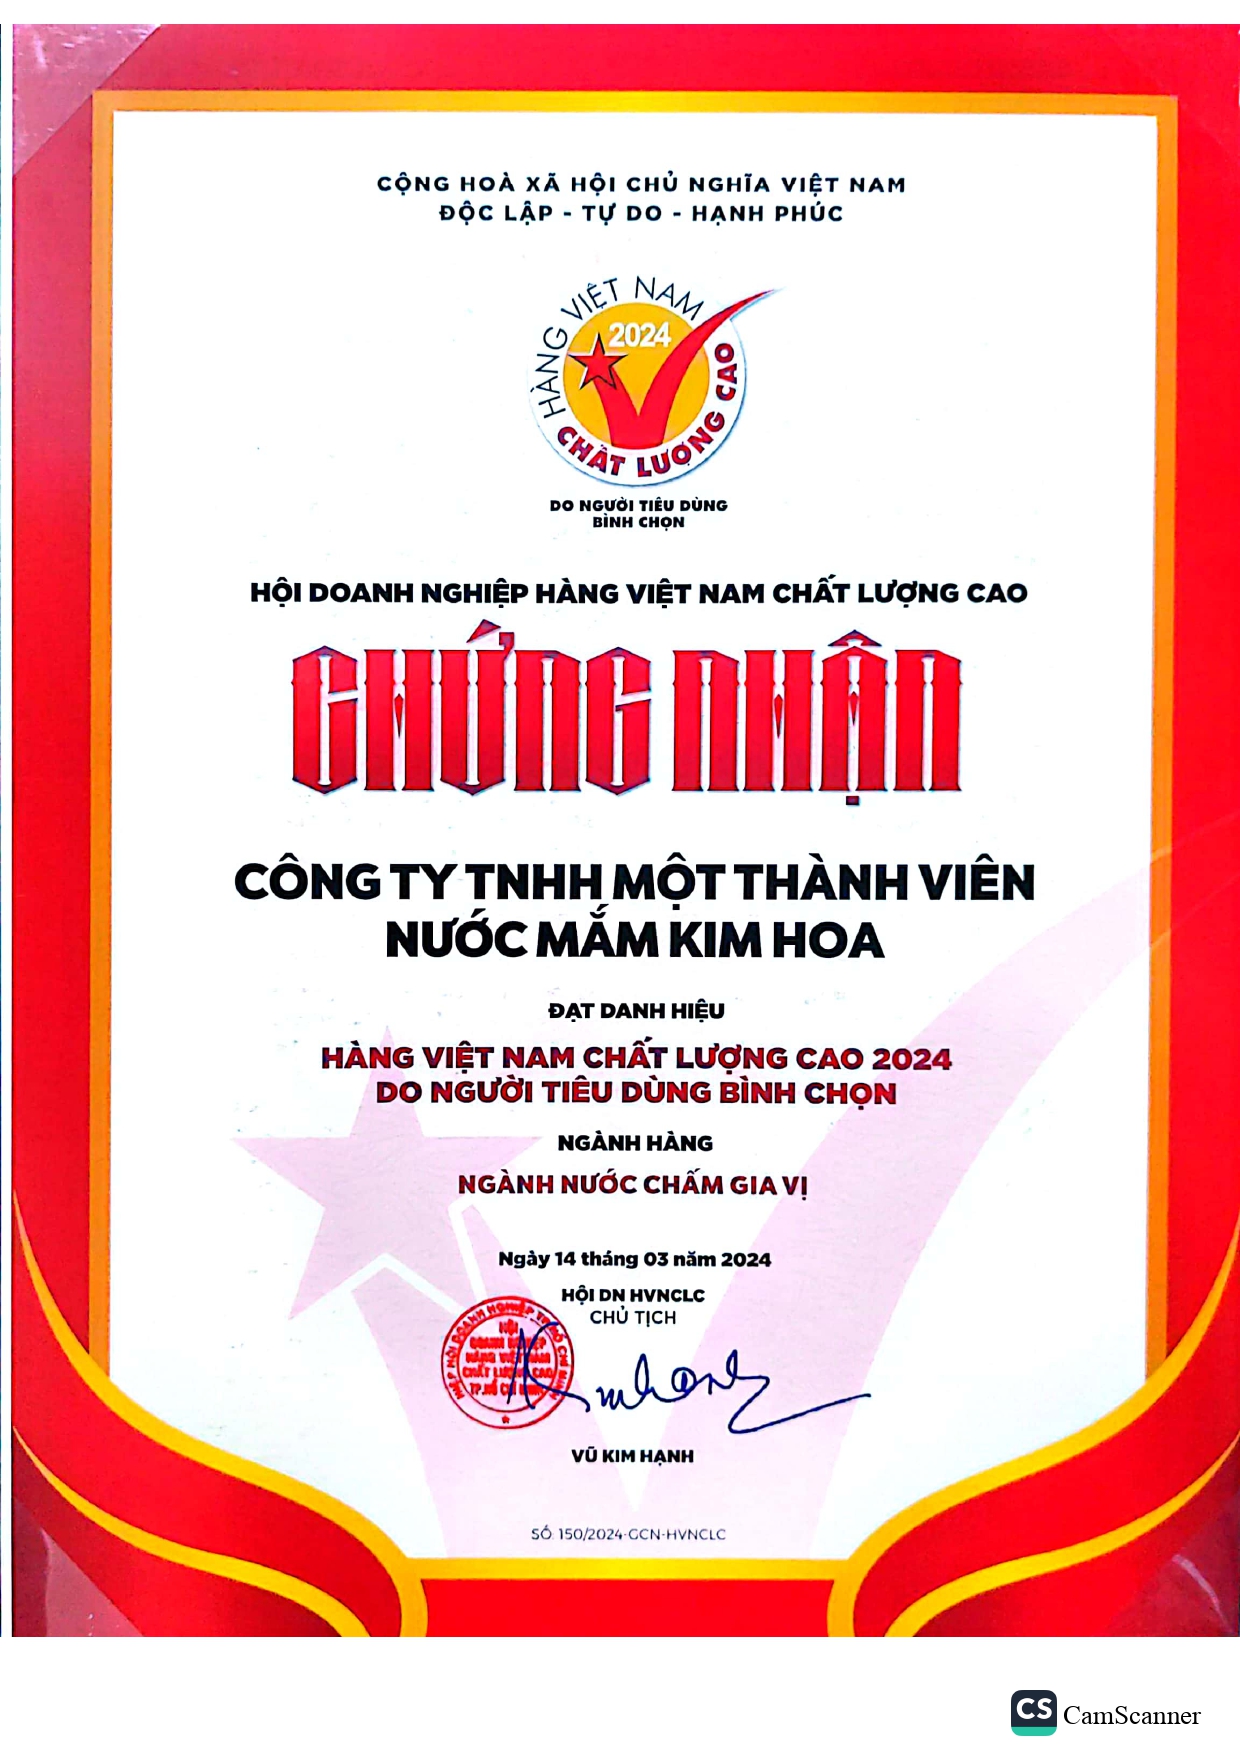 CN Hàng Việt Nam Chất Lượng Cao 2024